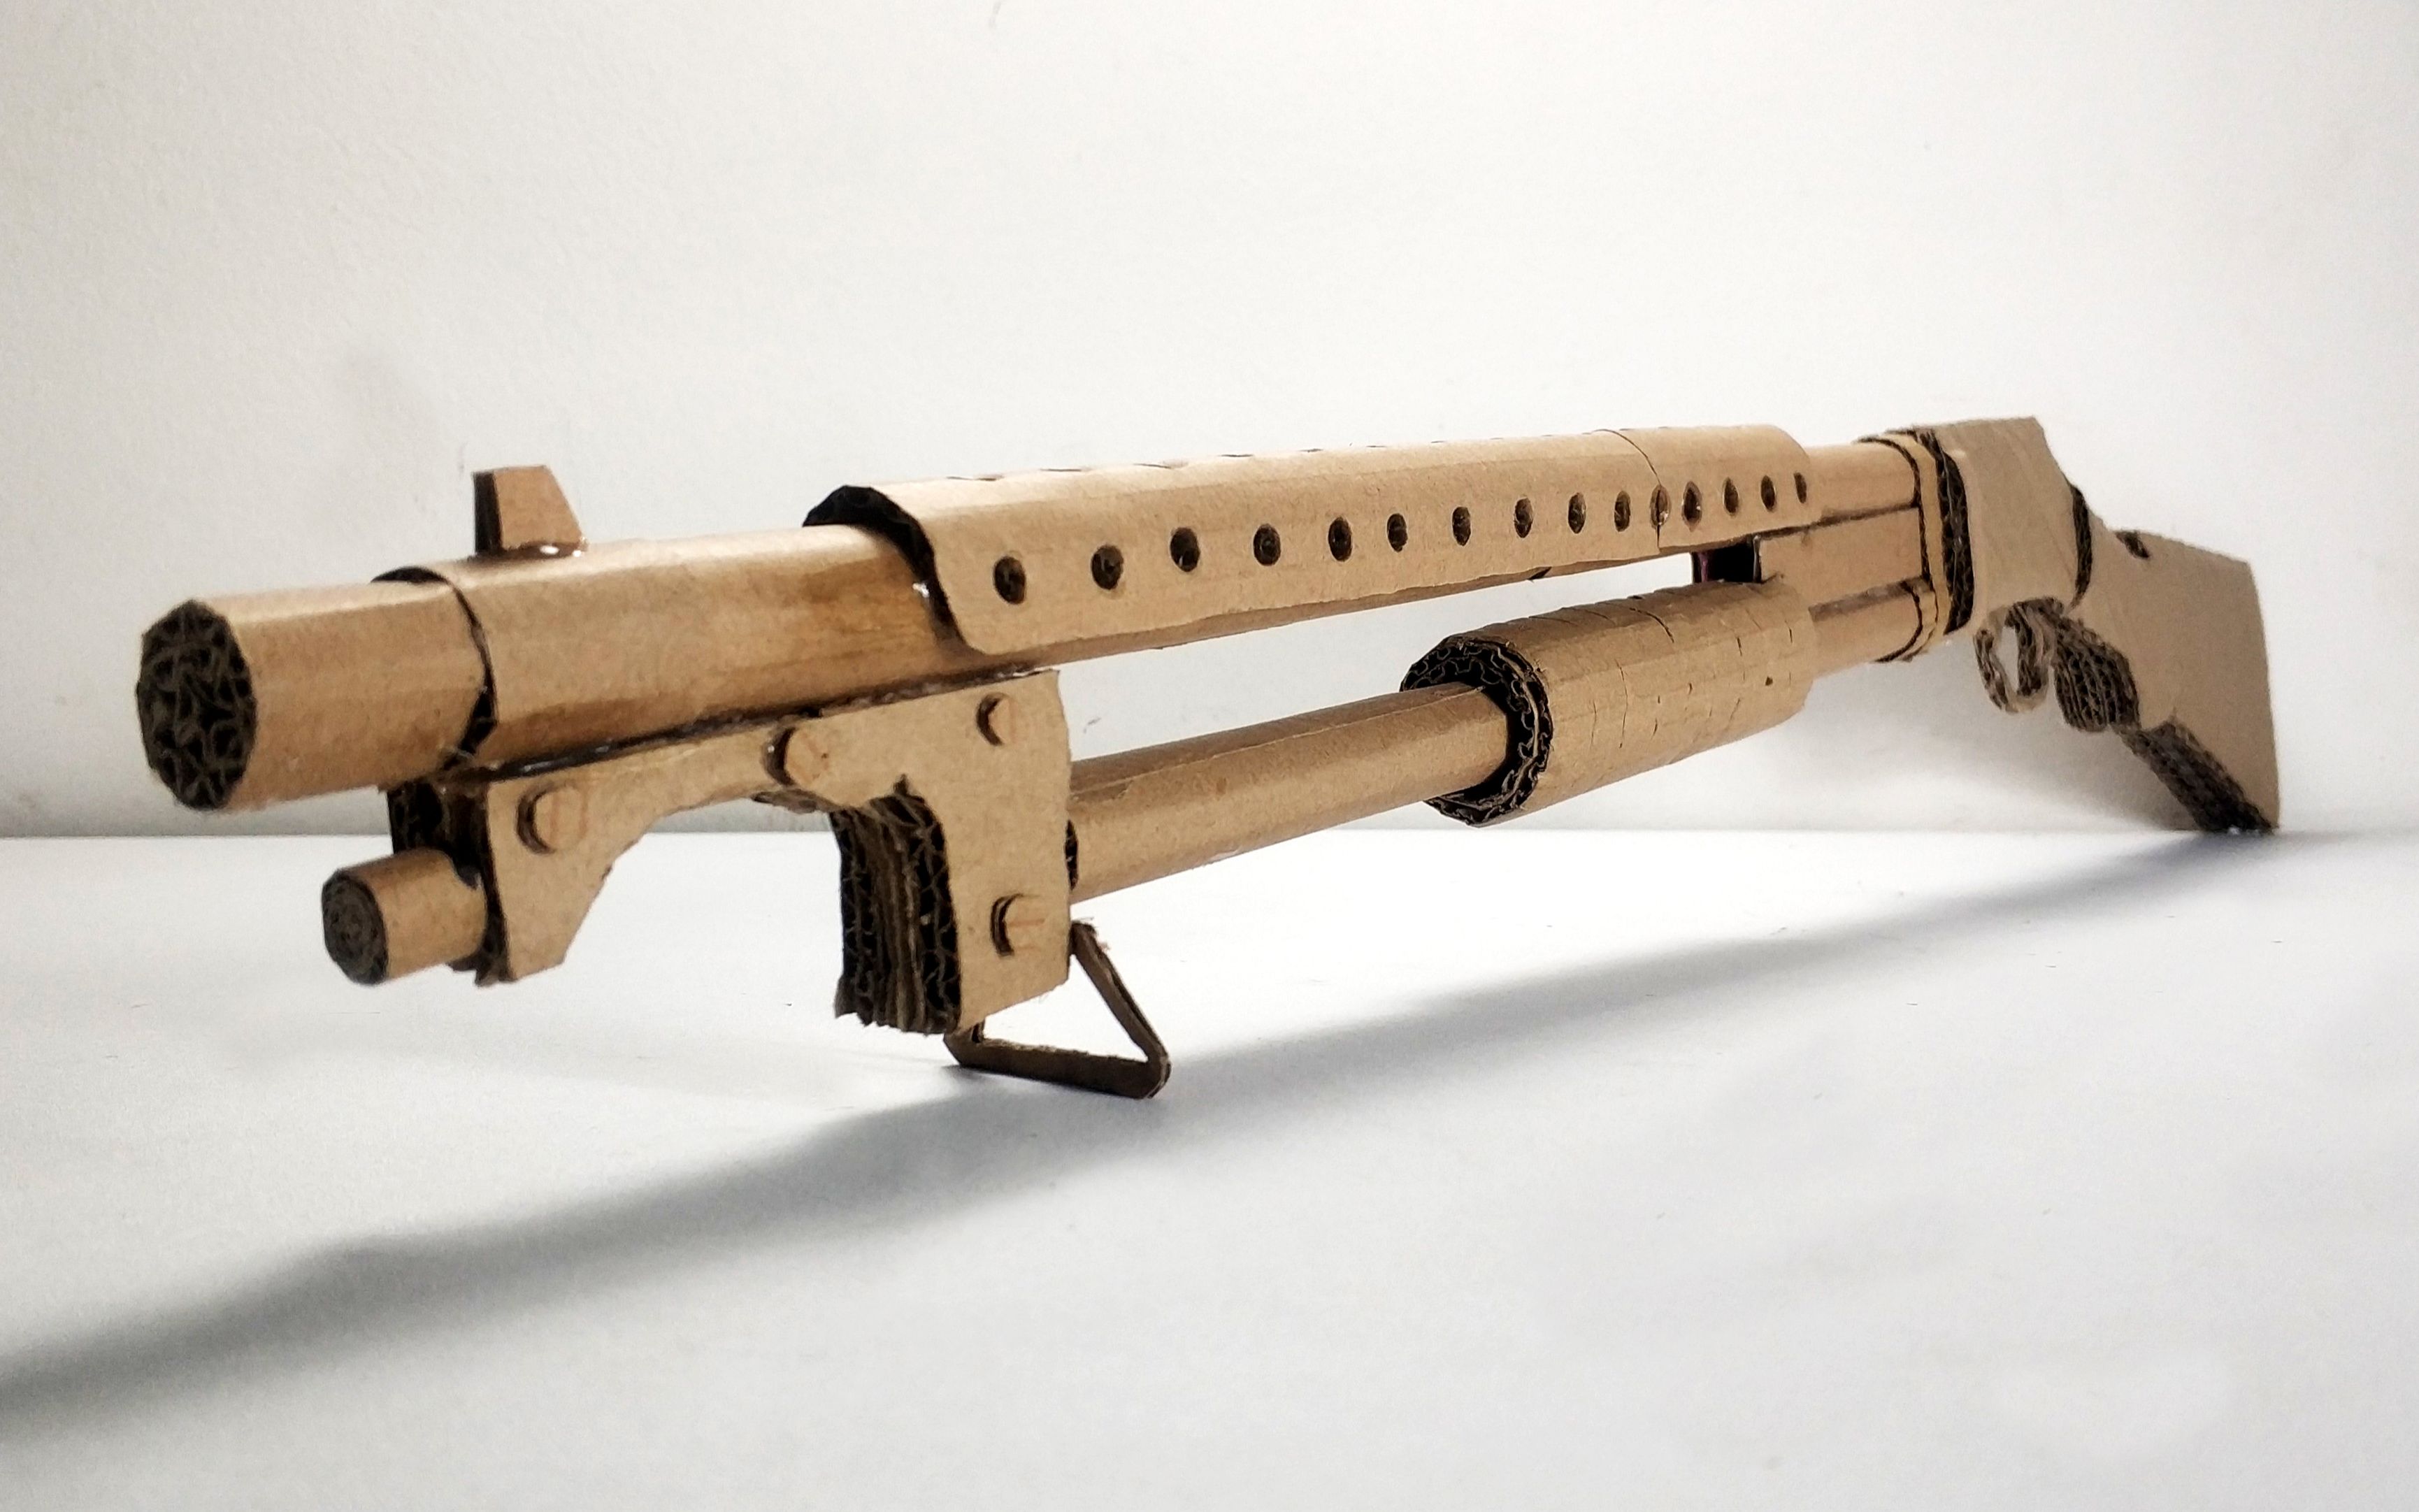 纸板玩具diy手工制作绝地求生s1897霰弹枪模型真的很好玩